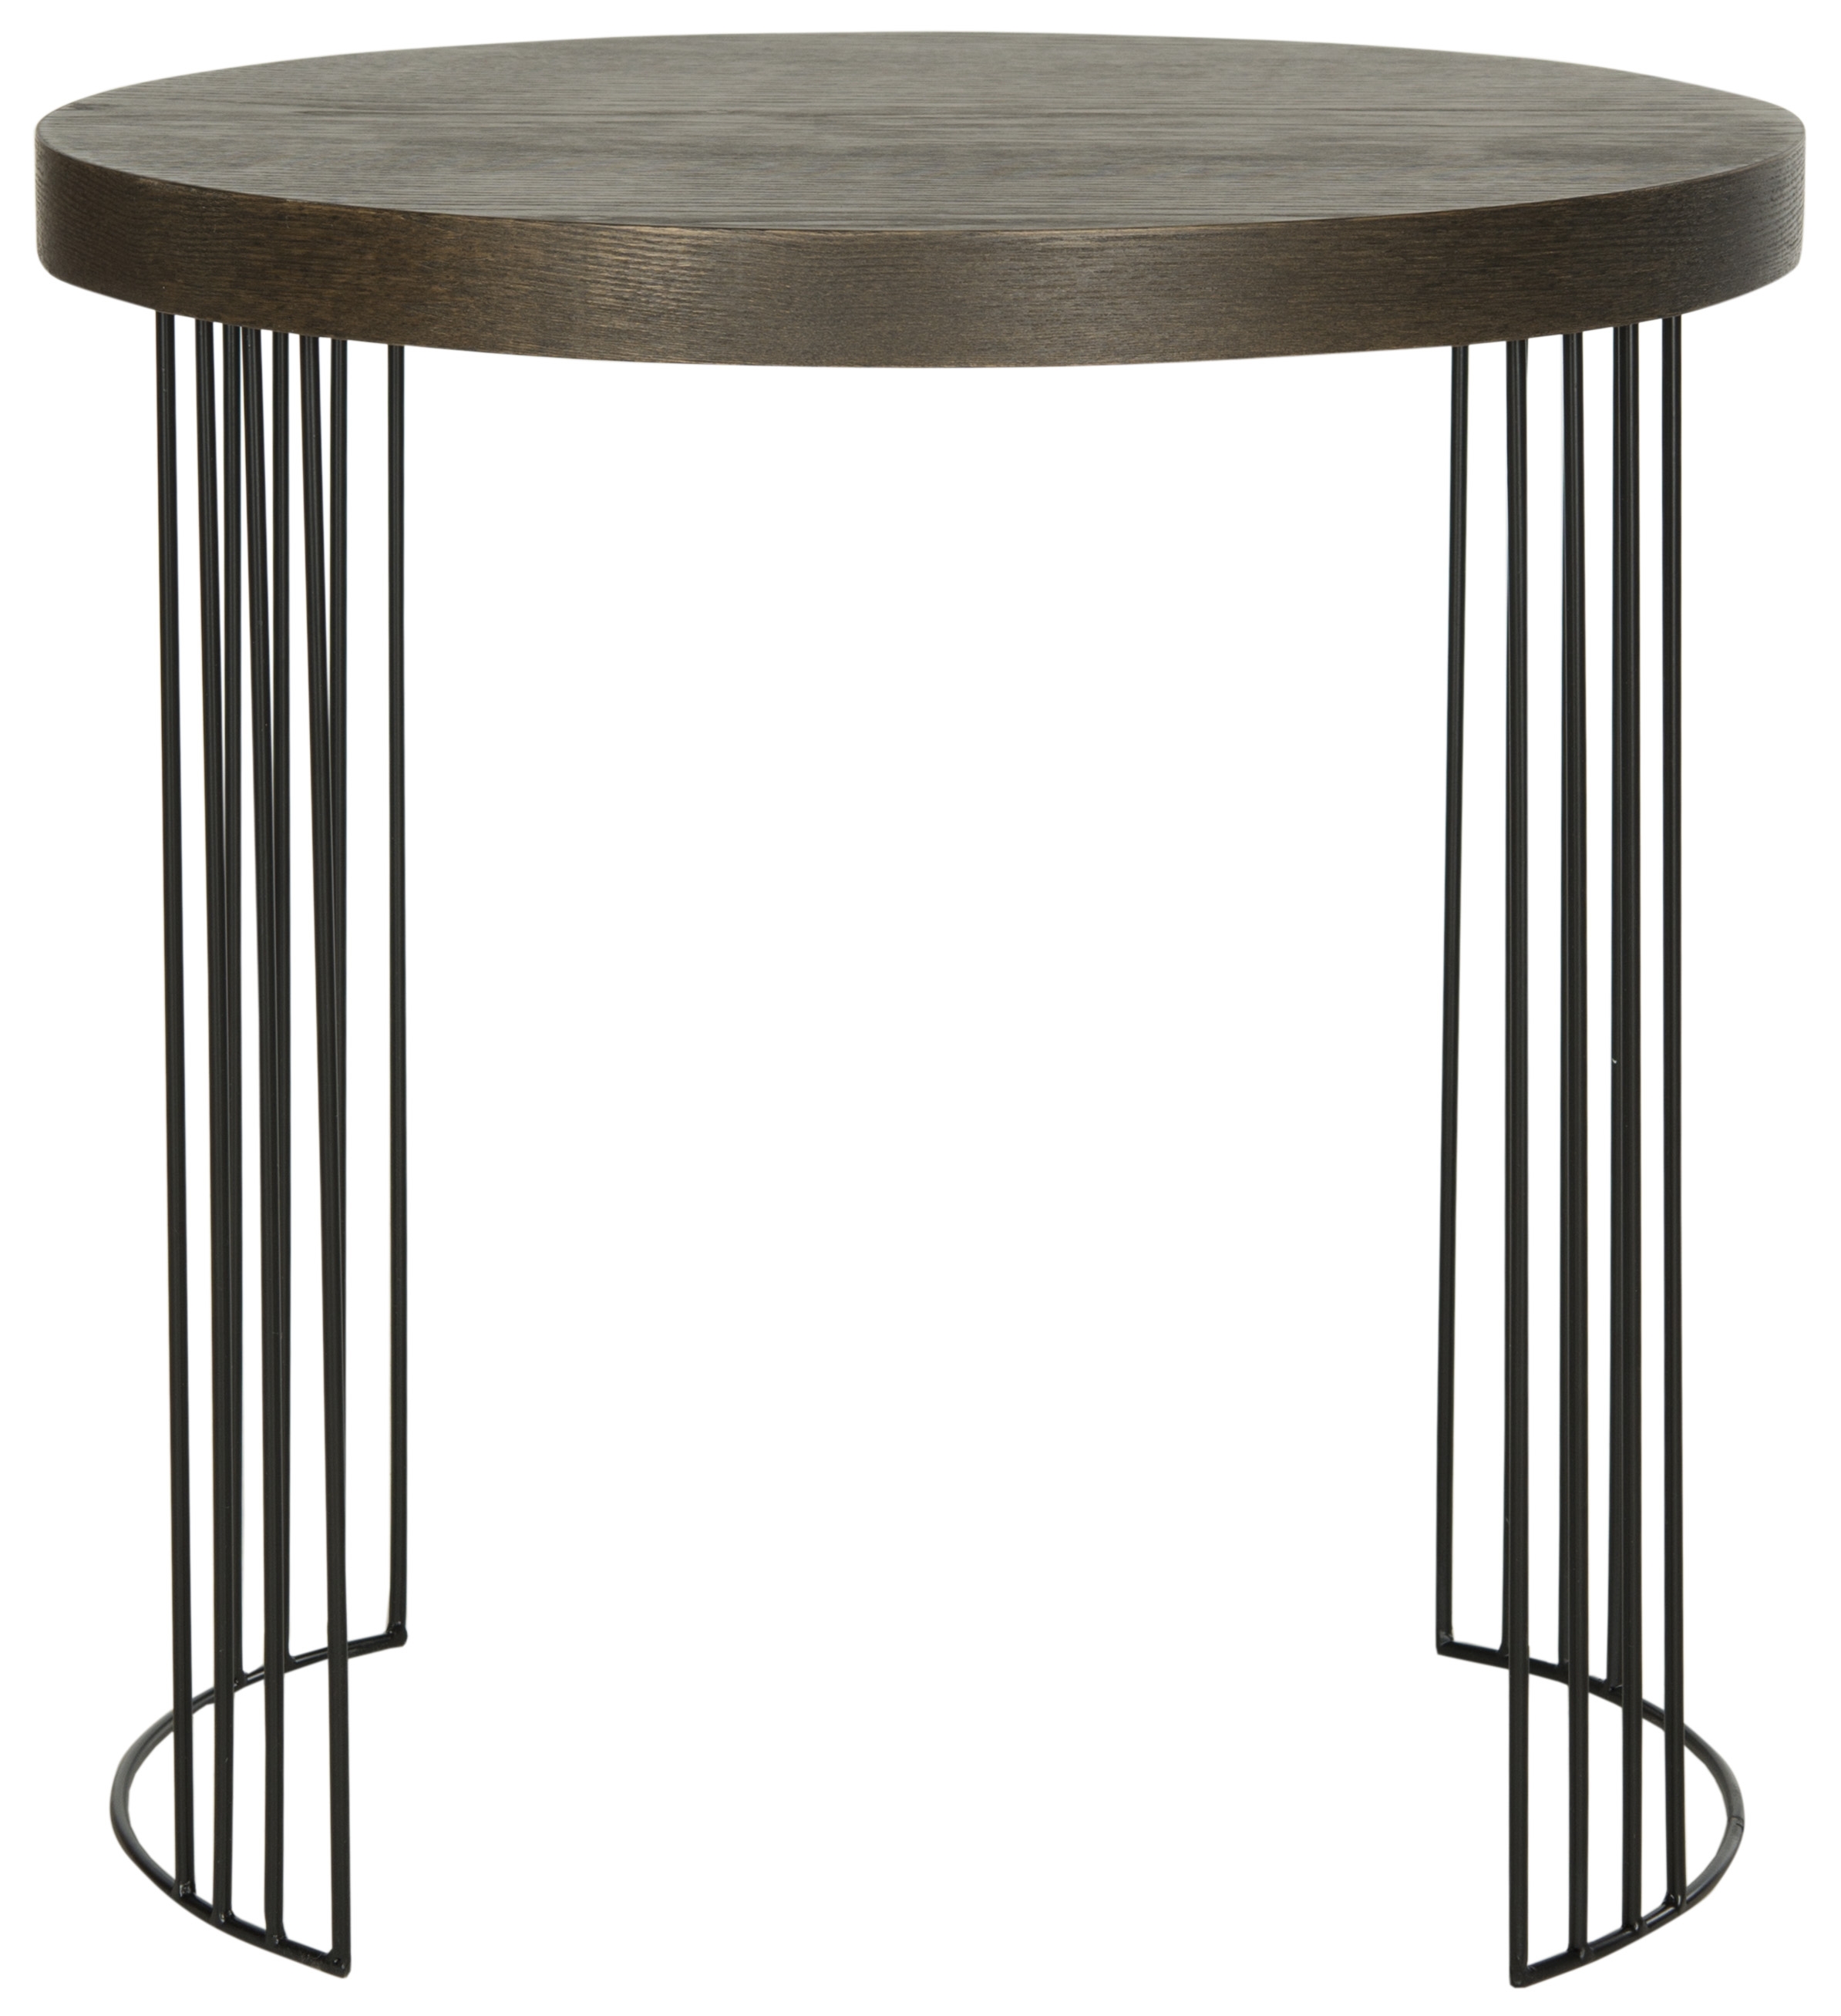 Kelly Mid Century Scandinavian Wood Side Table - Dark Brown/Black - Safavieh - Image 0